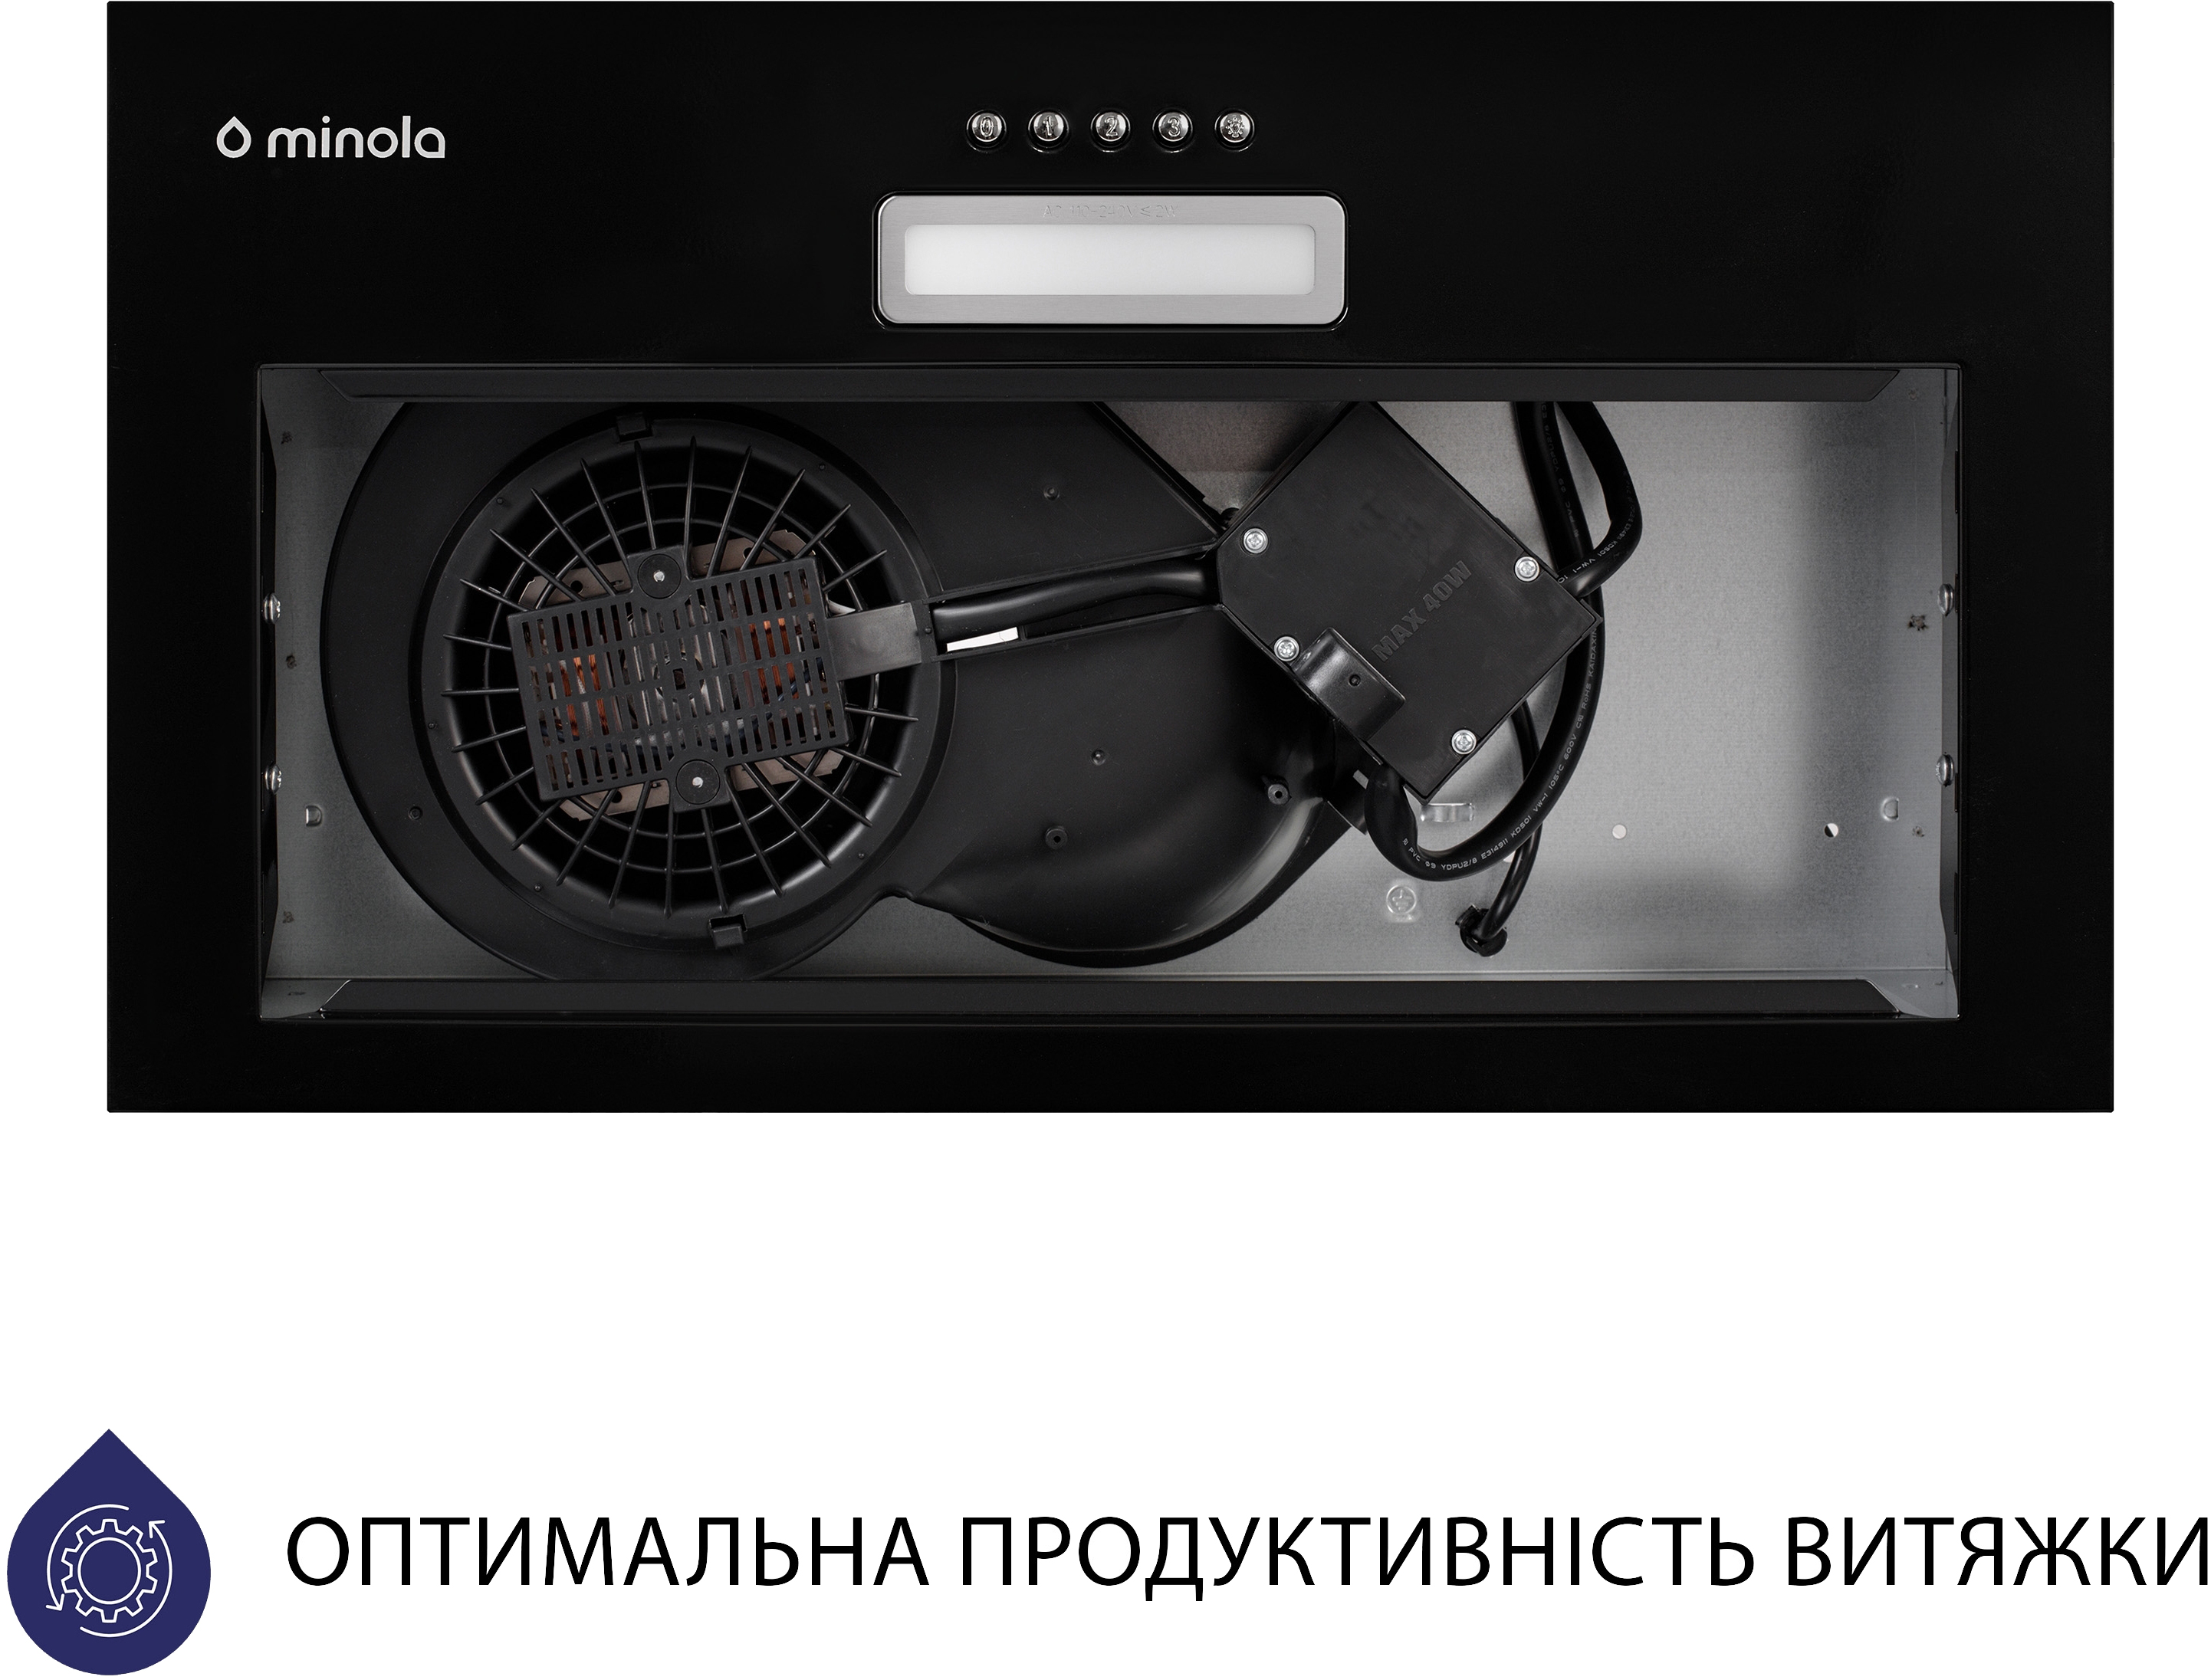 Вытяжка кухонная Minola HBI 5025 BL LED отзывы - изображения 5